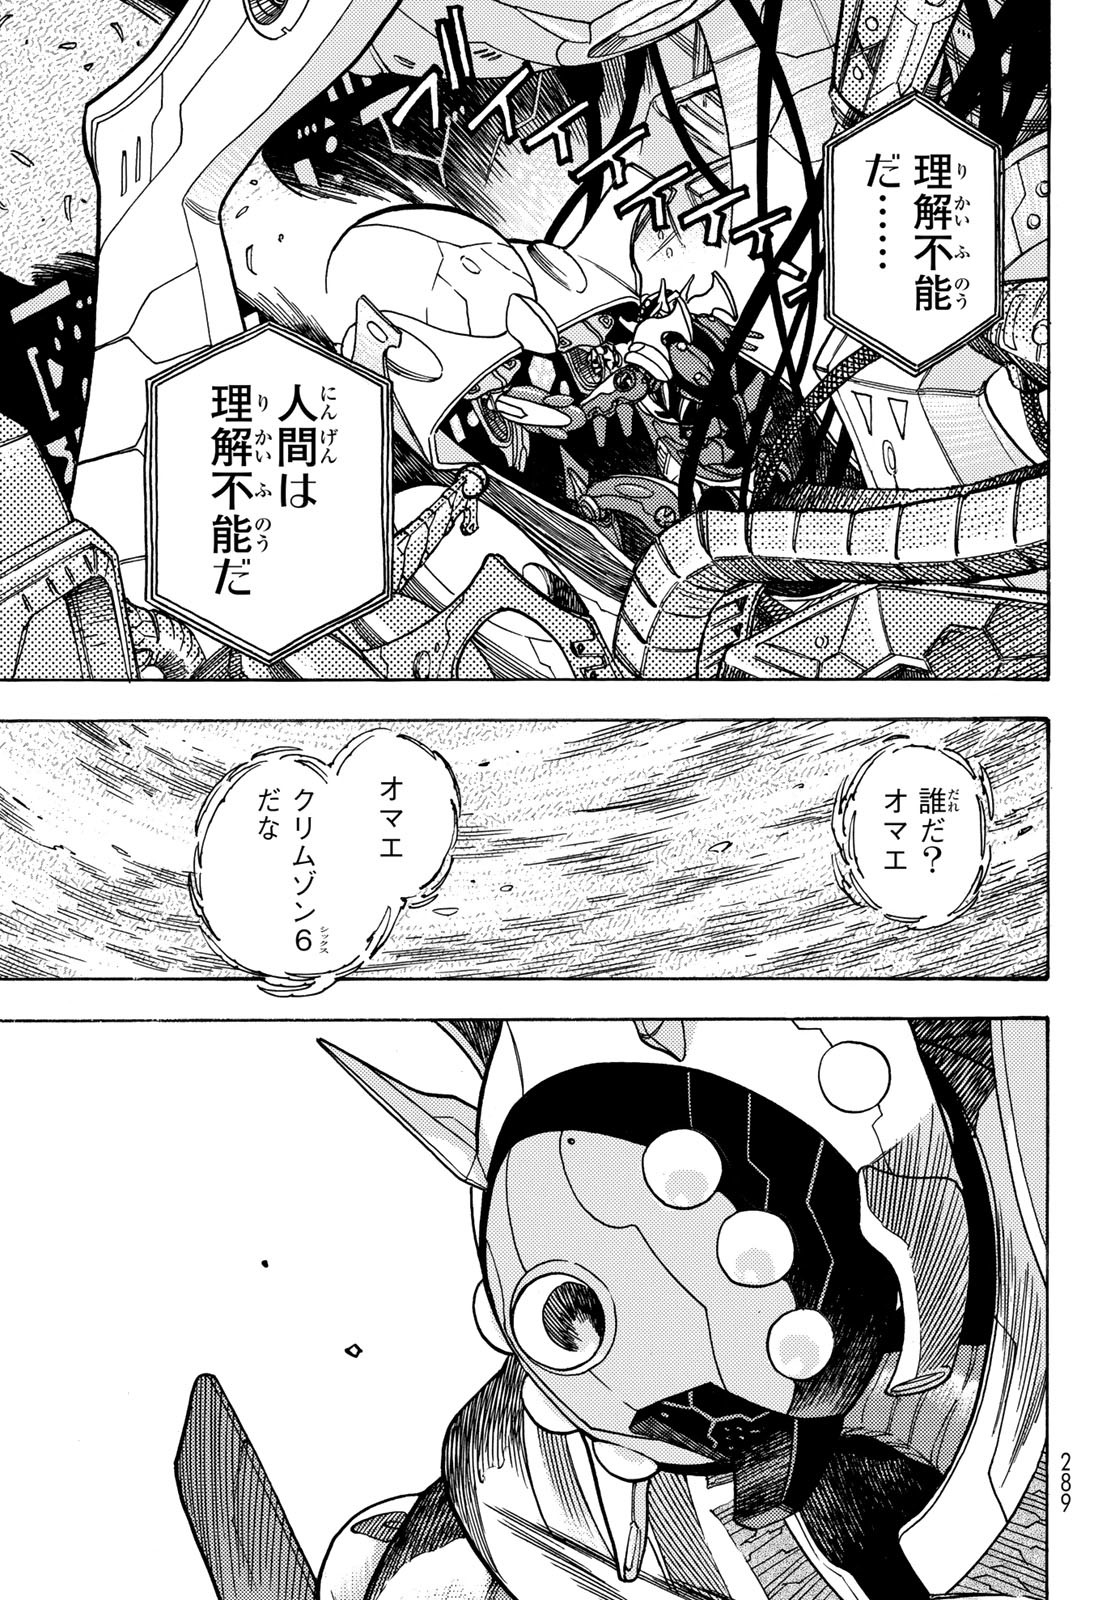 Mugou no Schnell Gear: Chikyuugai Kisouka AI - Chapter 51 - Page 5